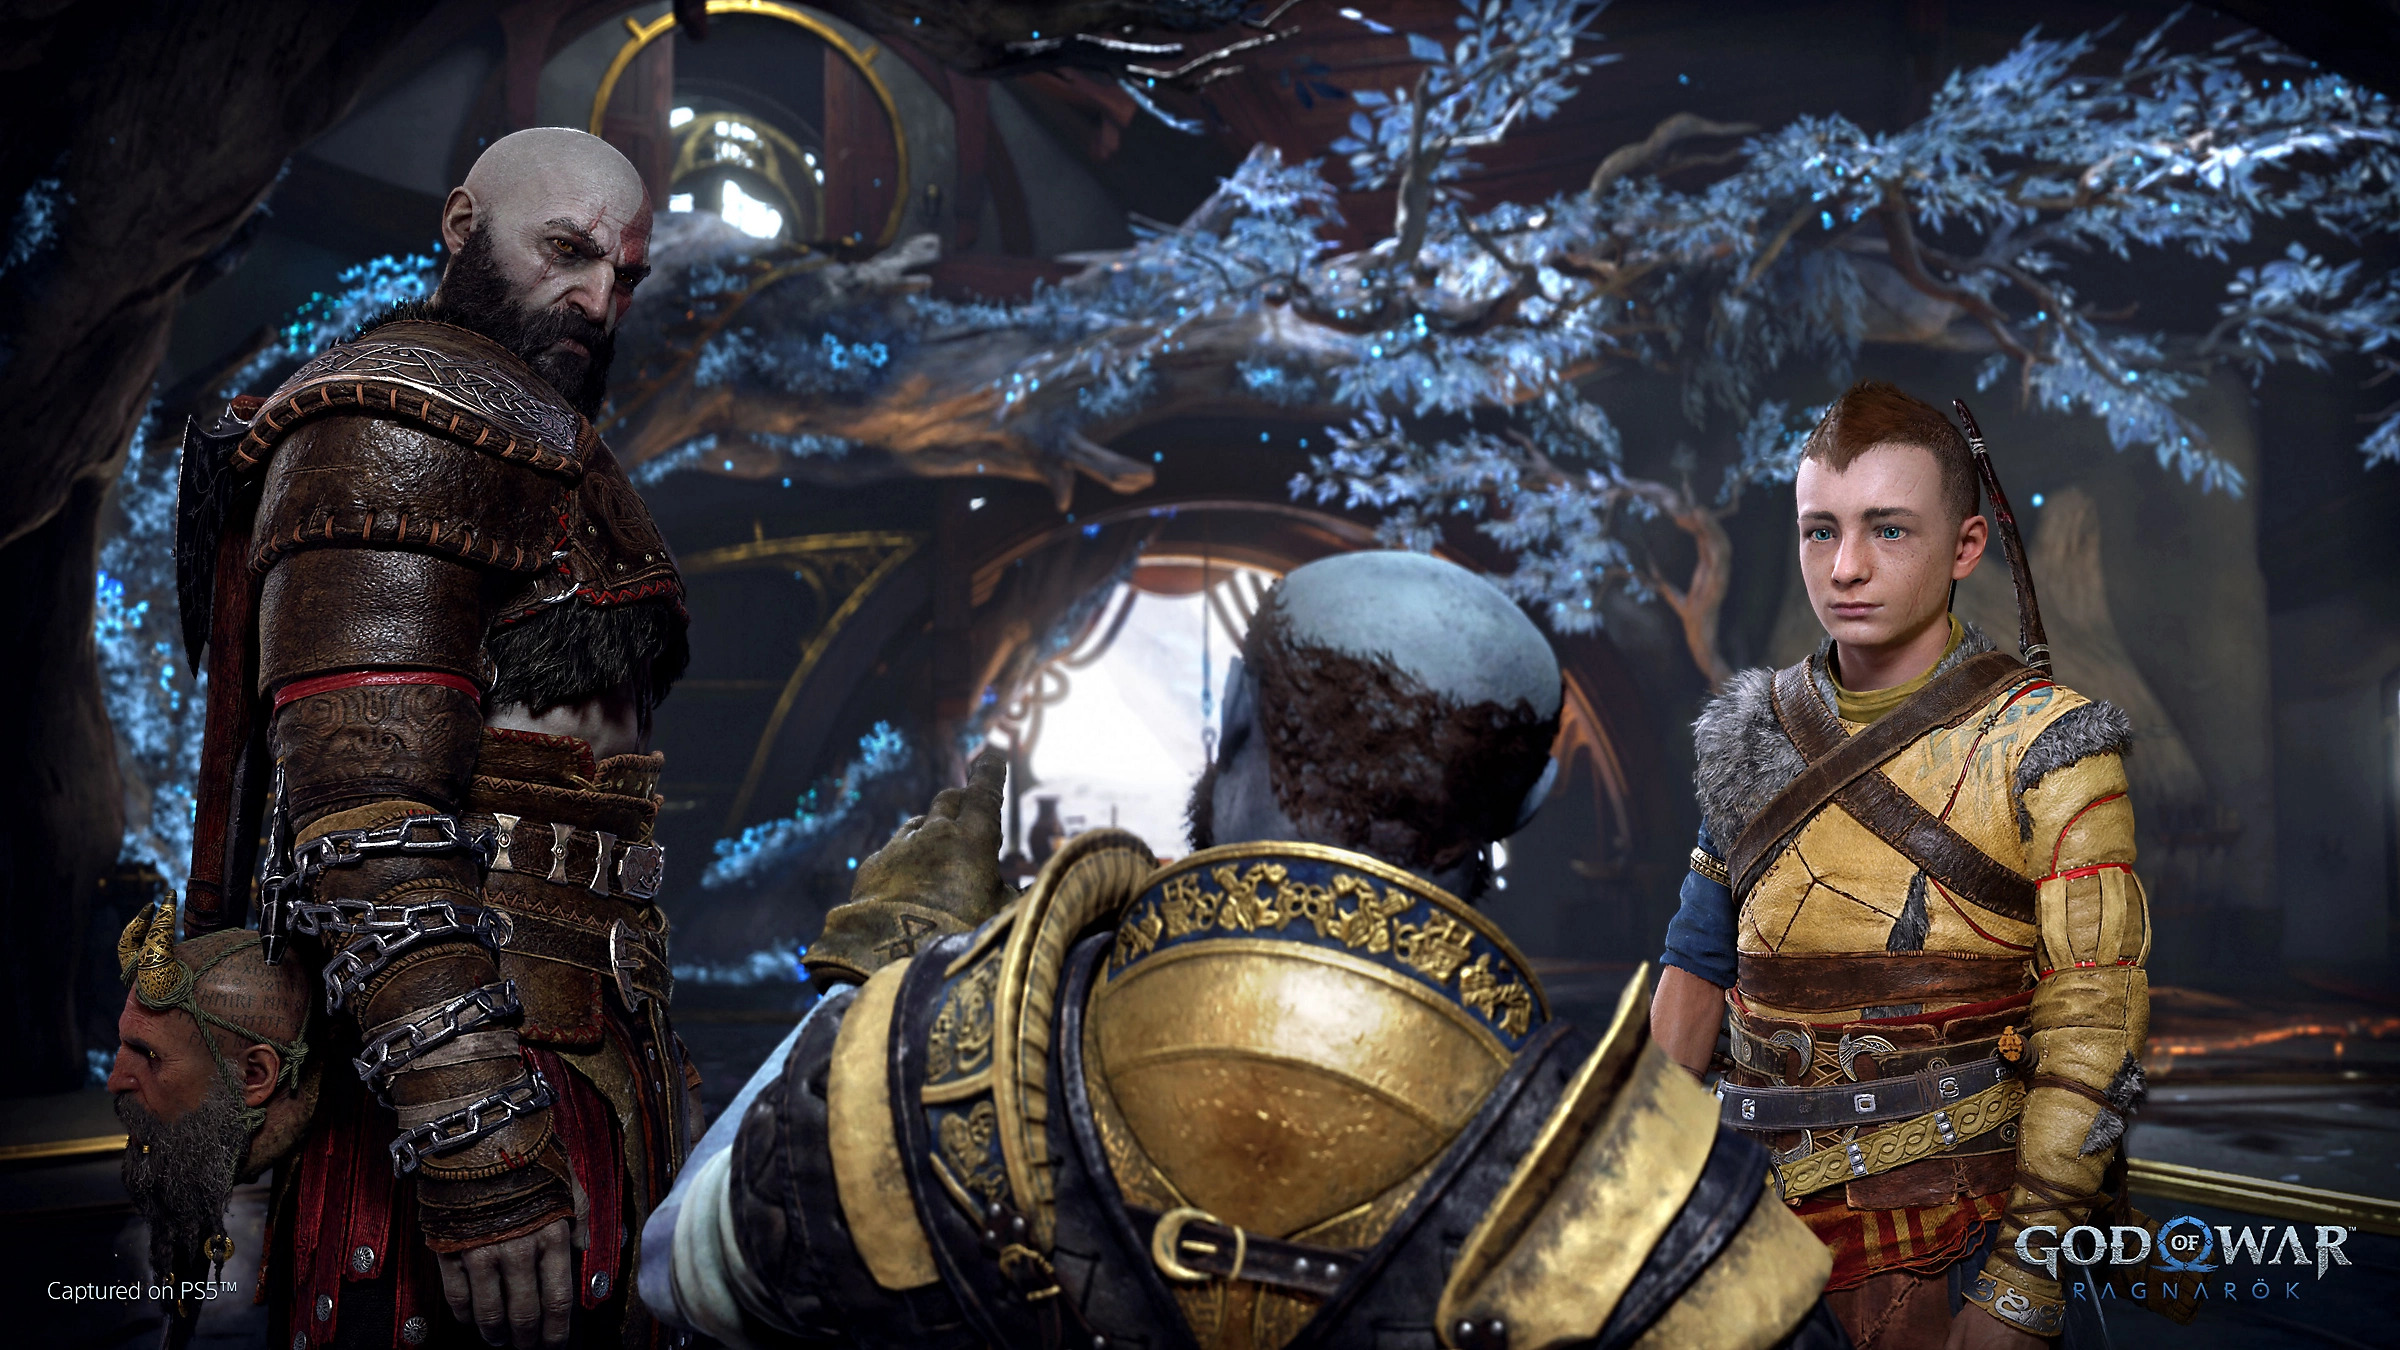 Brok, a blue dwarf, speaks to Kratos and Atreus in God of War: Ragnarök